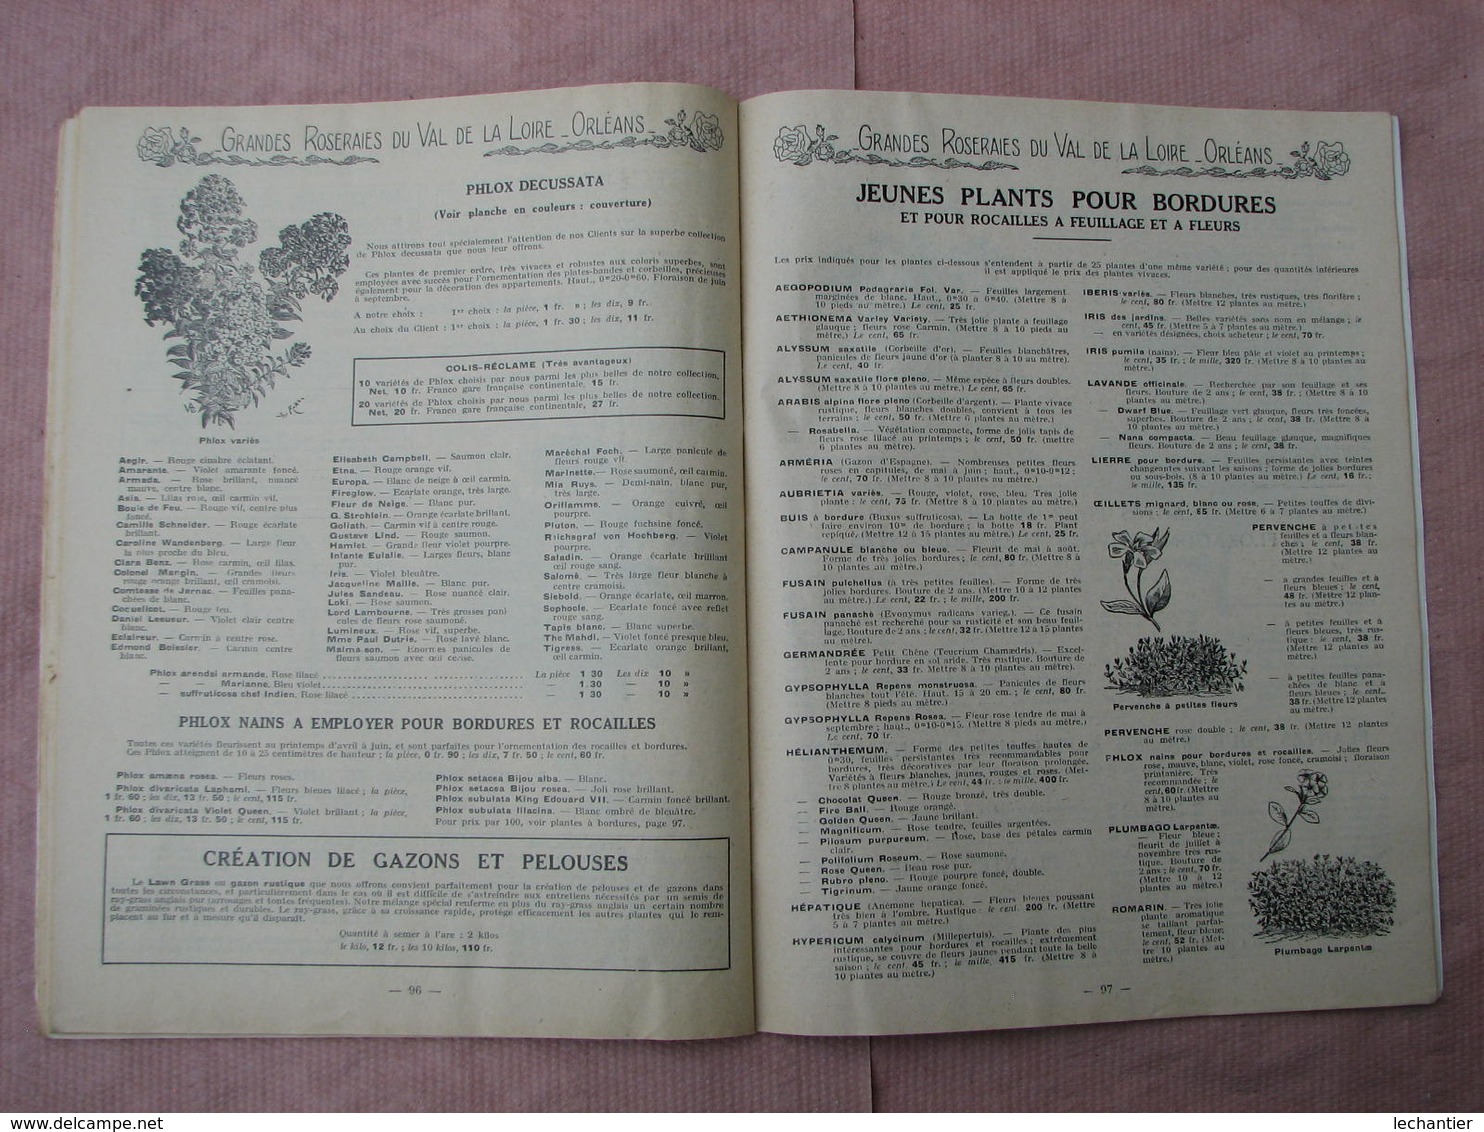 GRANDES  ROSERAIES du VAL de LOIRE  1935-1936  ORLEANS Gros catalogue de 111 pages, voir photos TBE